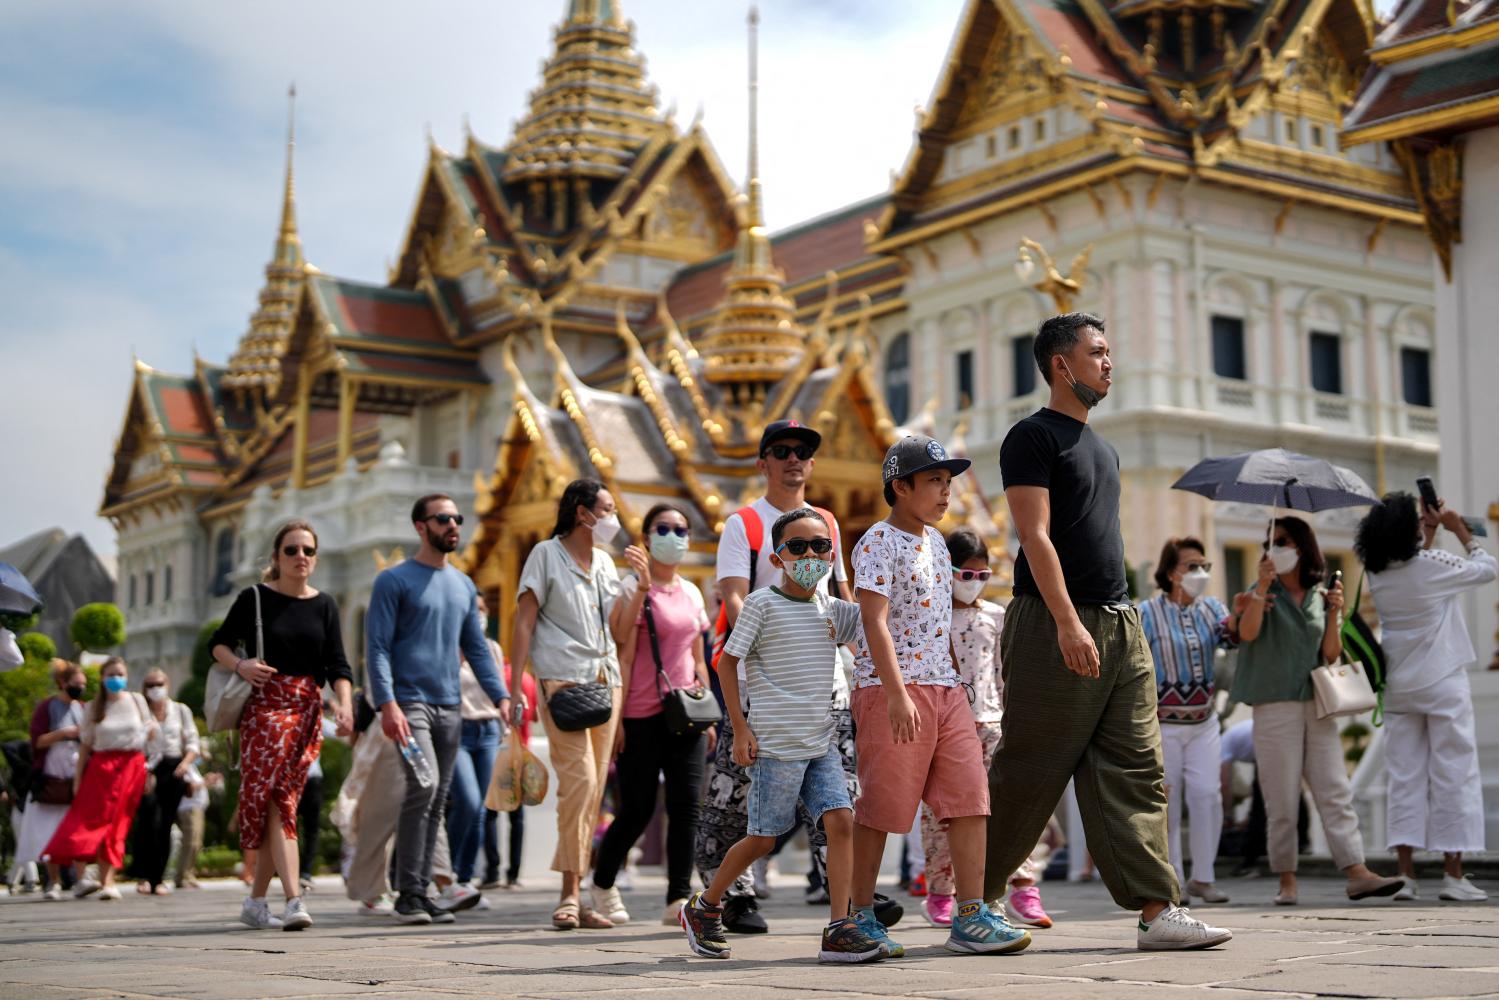 Таиланд надеется получить 4 миллиарда долларов от китайских туристов после отмены визового режима